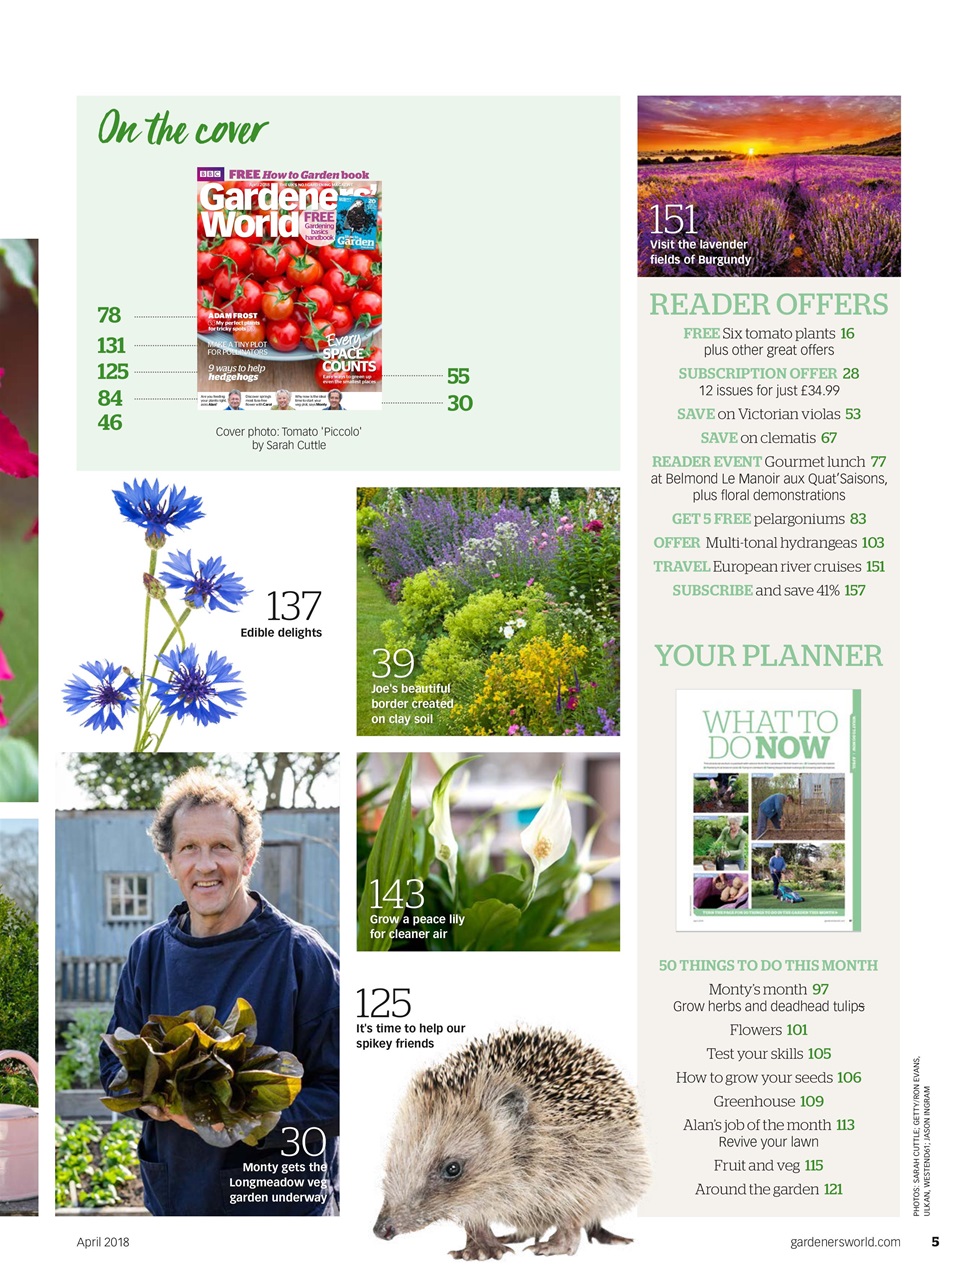 Gardeners world magazine offers